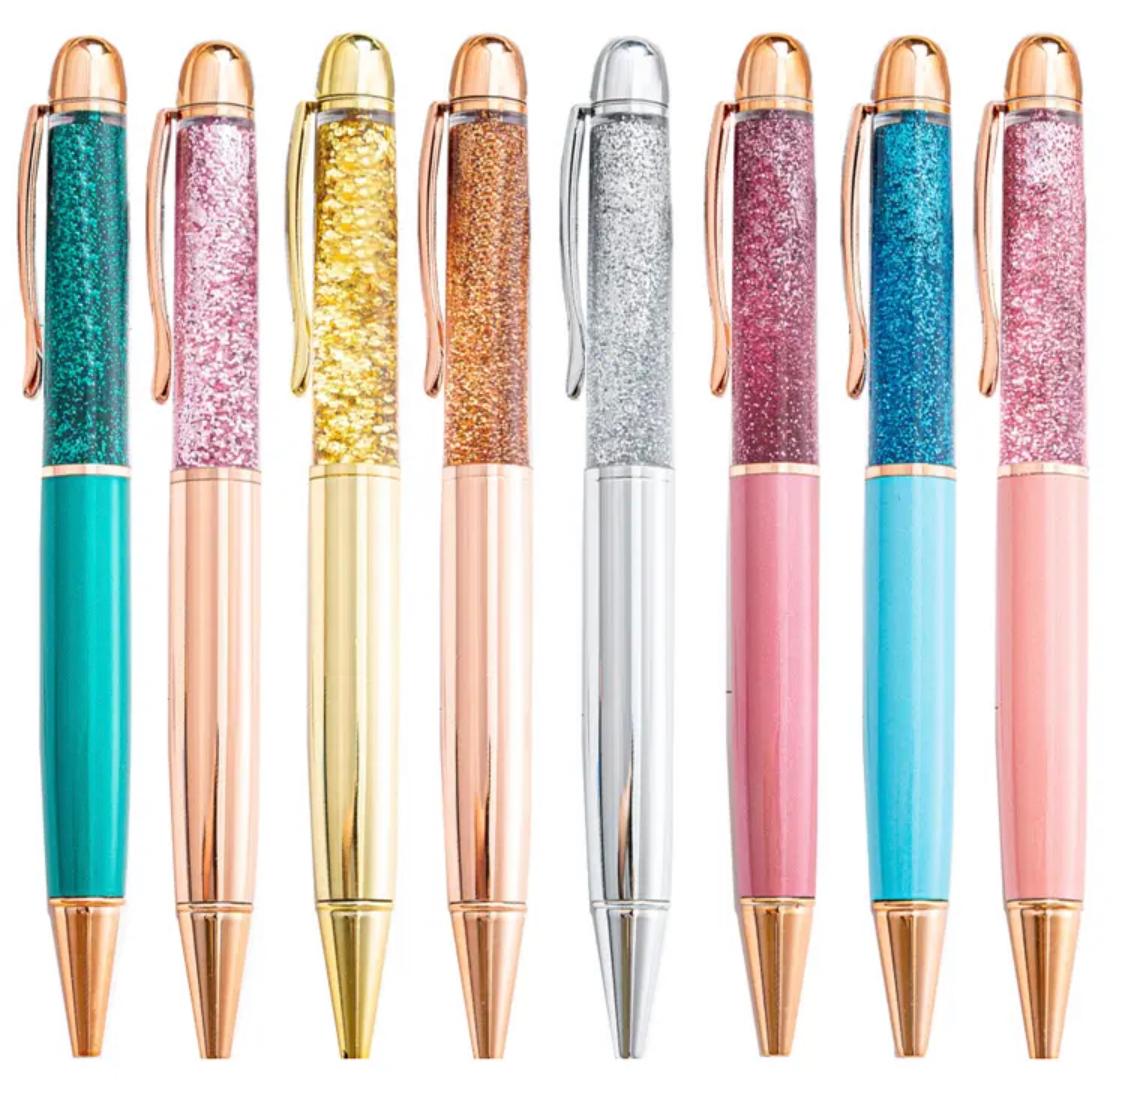 עט כדורי עם נצנצים במגוון צבעים